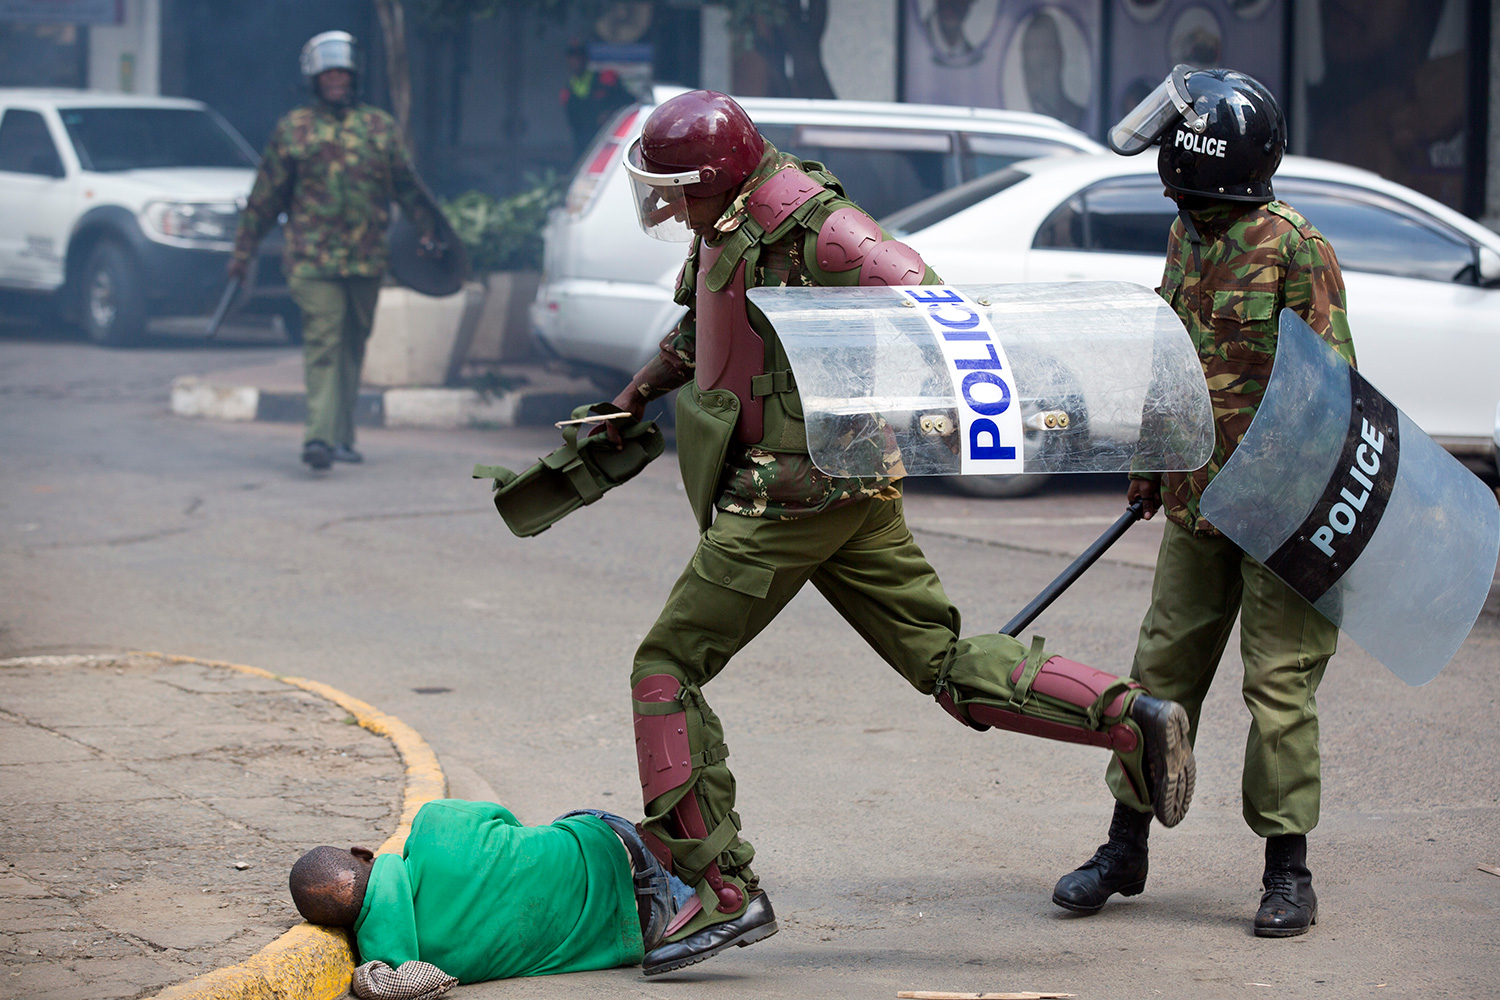 La policía de Kenia lanza una investigación después de que varios agentes fueran grabados dando una paliza a un manifestante